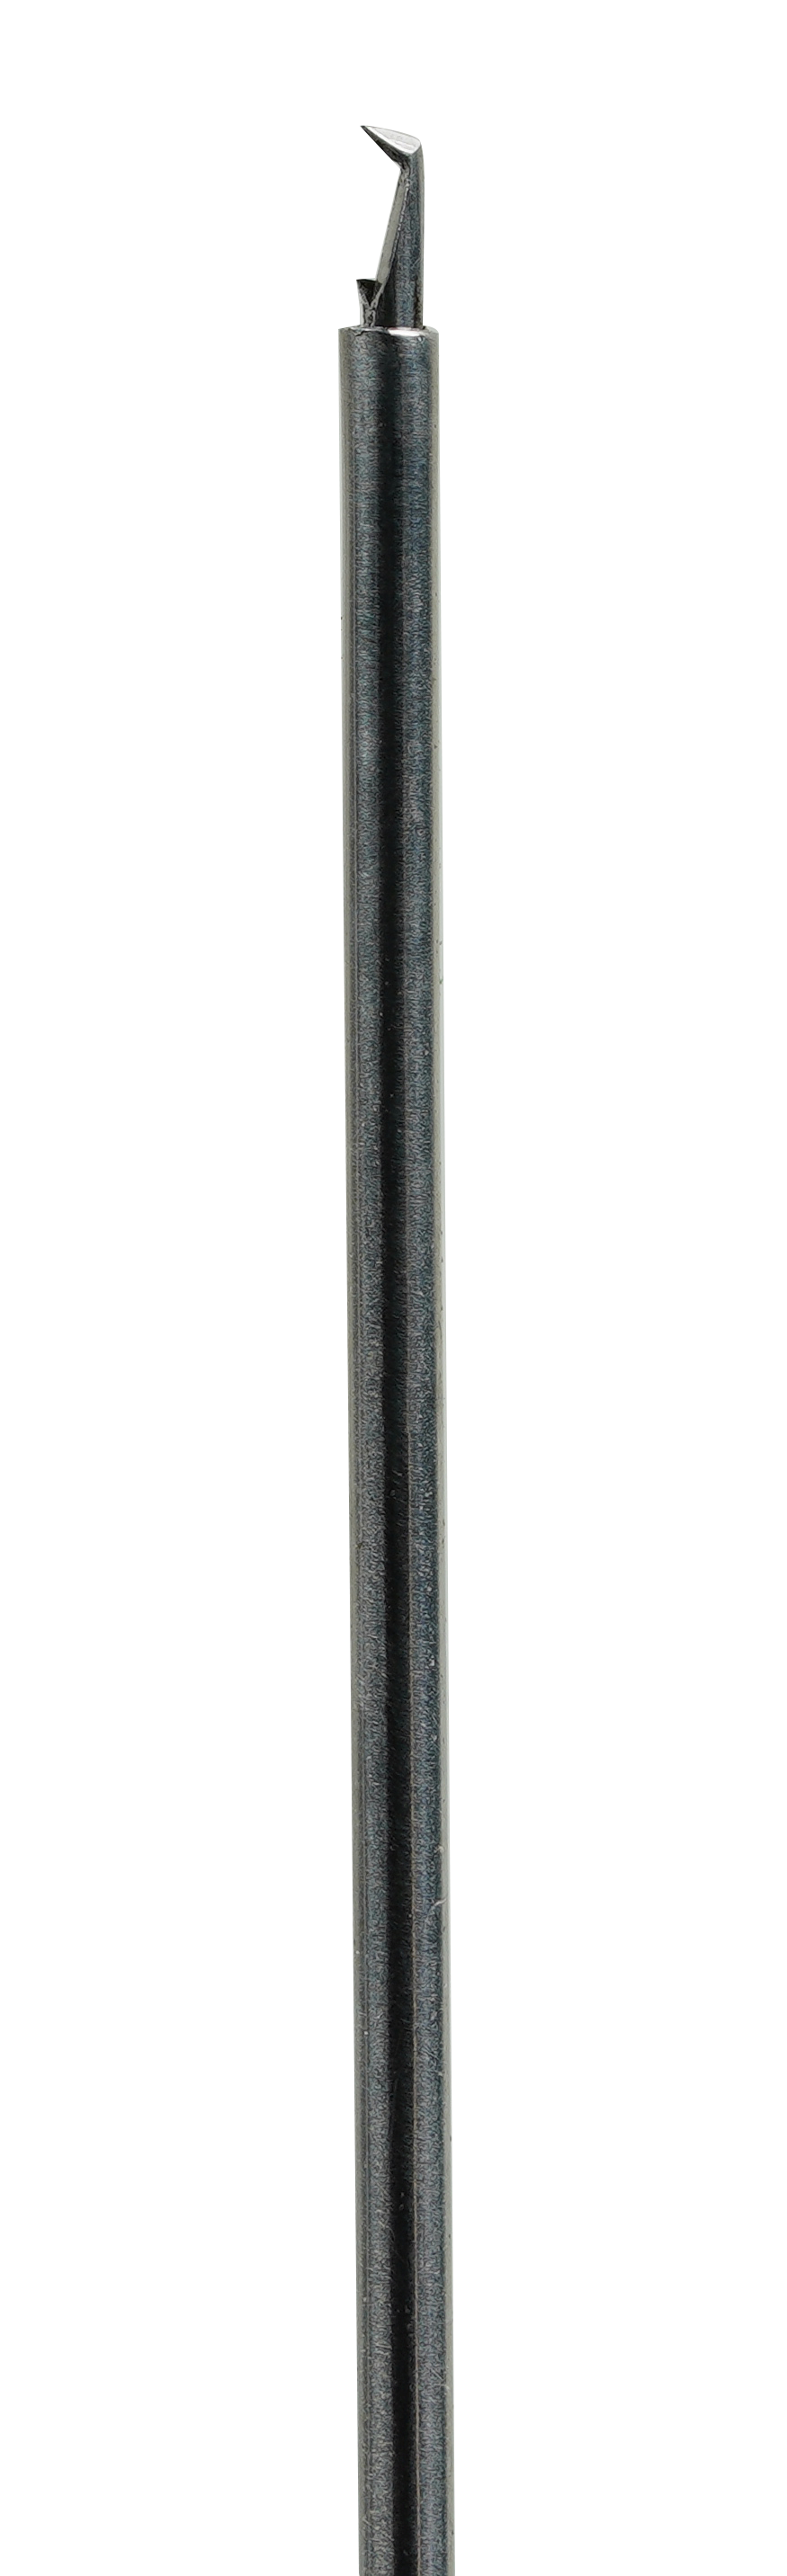 UN-3122 (23G) Пинцет для гладких губок из нержавеющей стали